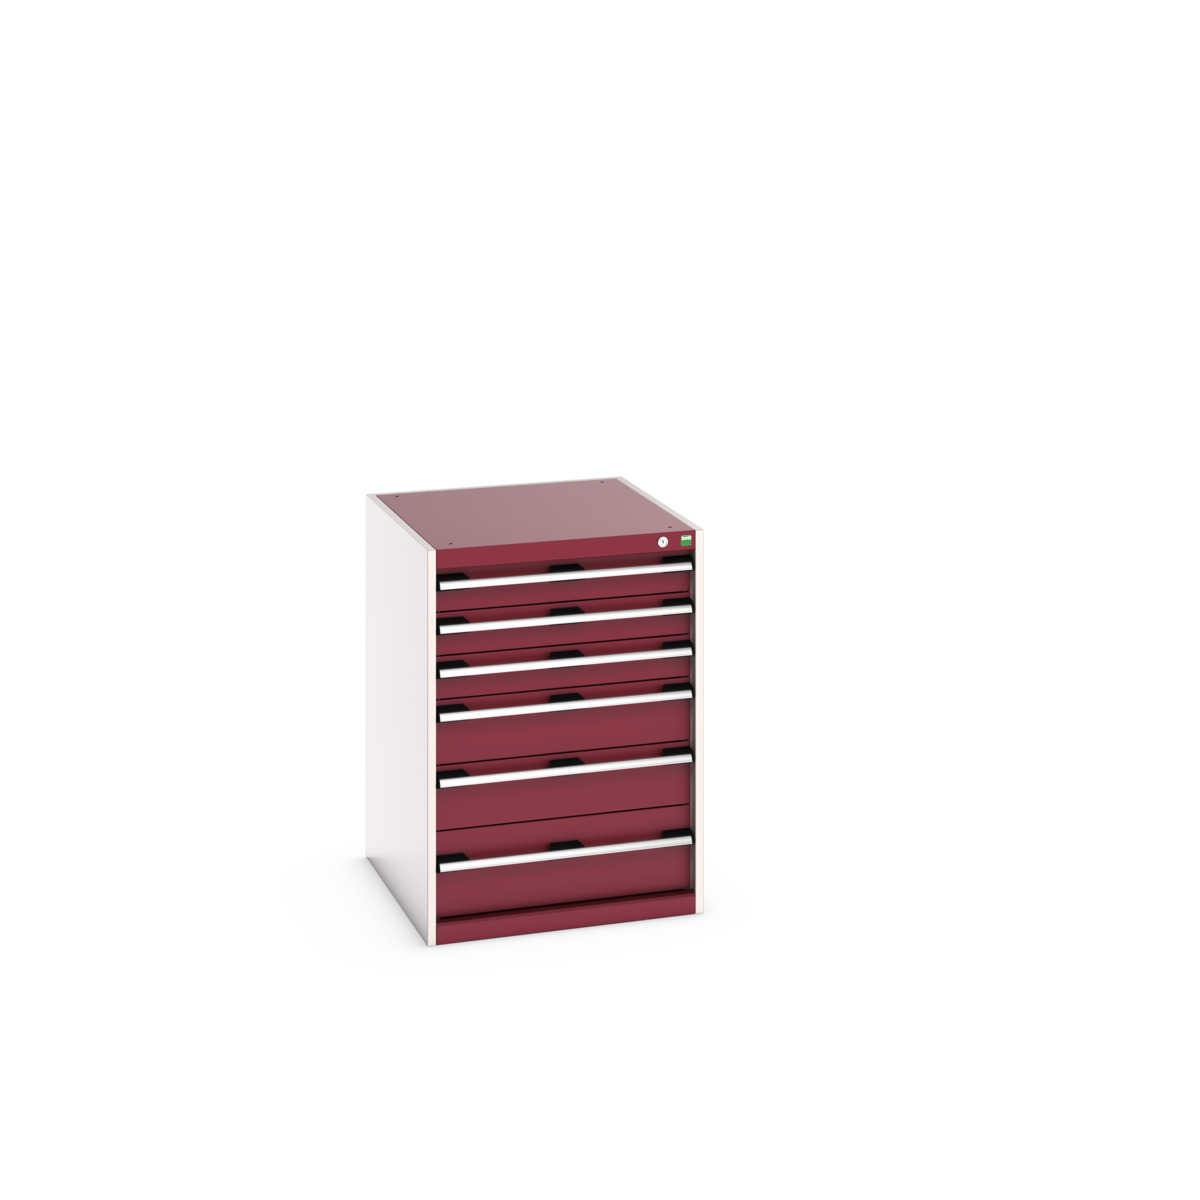 40027088.24V - cubio drawer cabinet